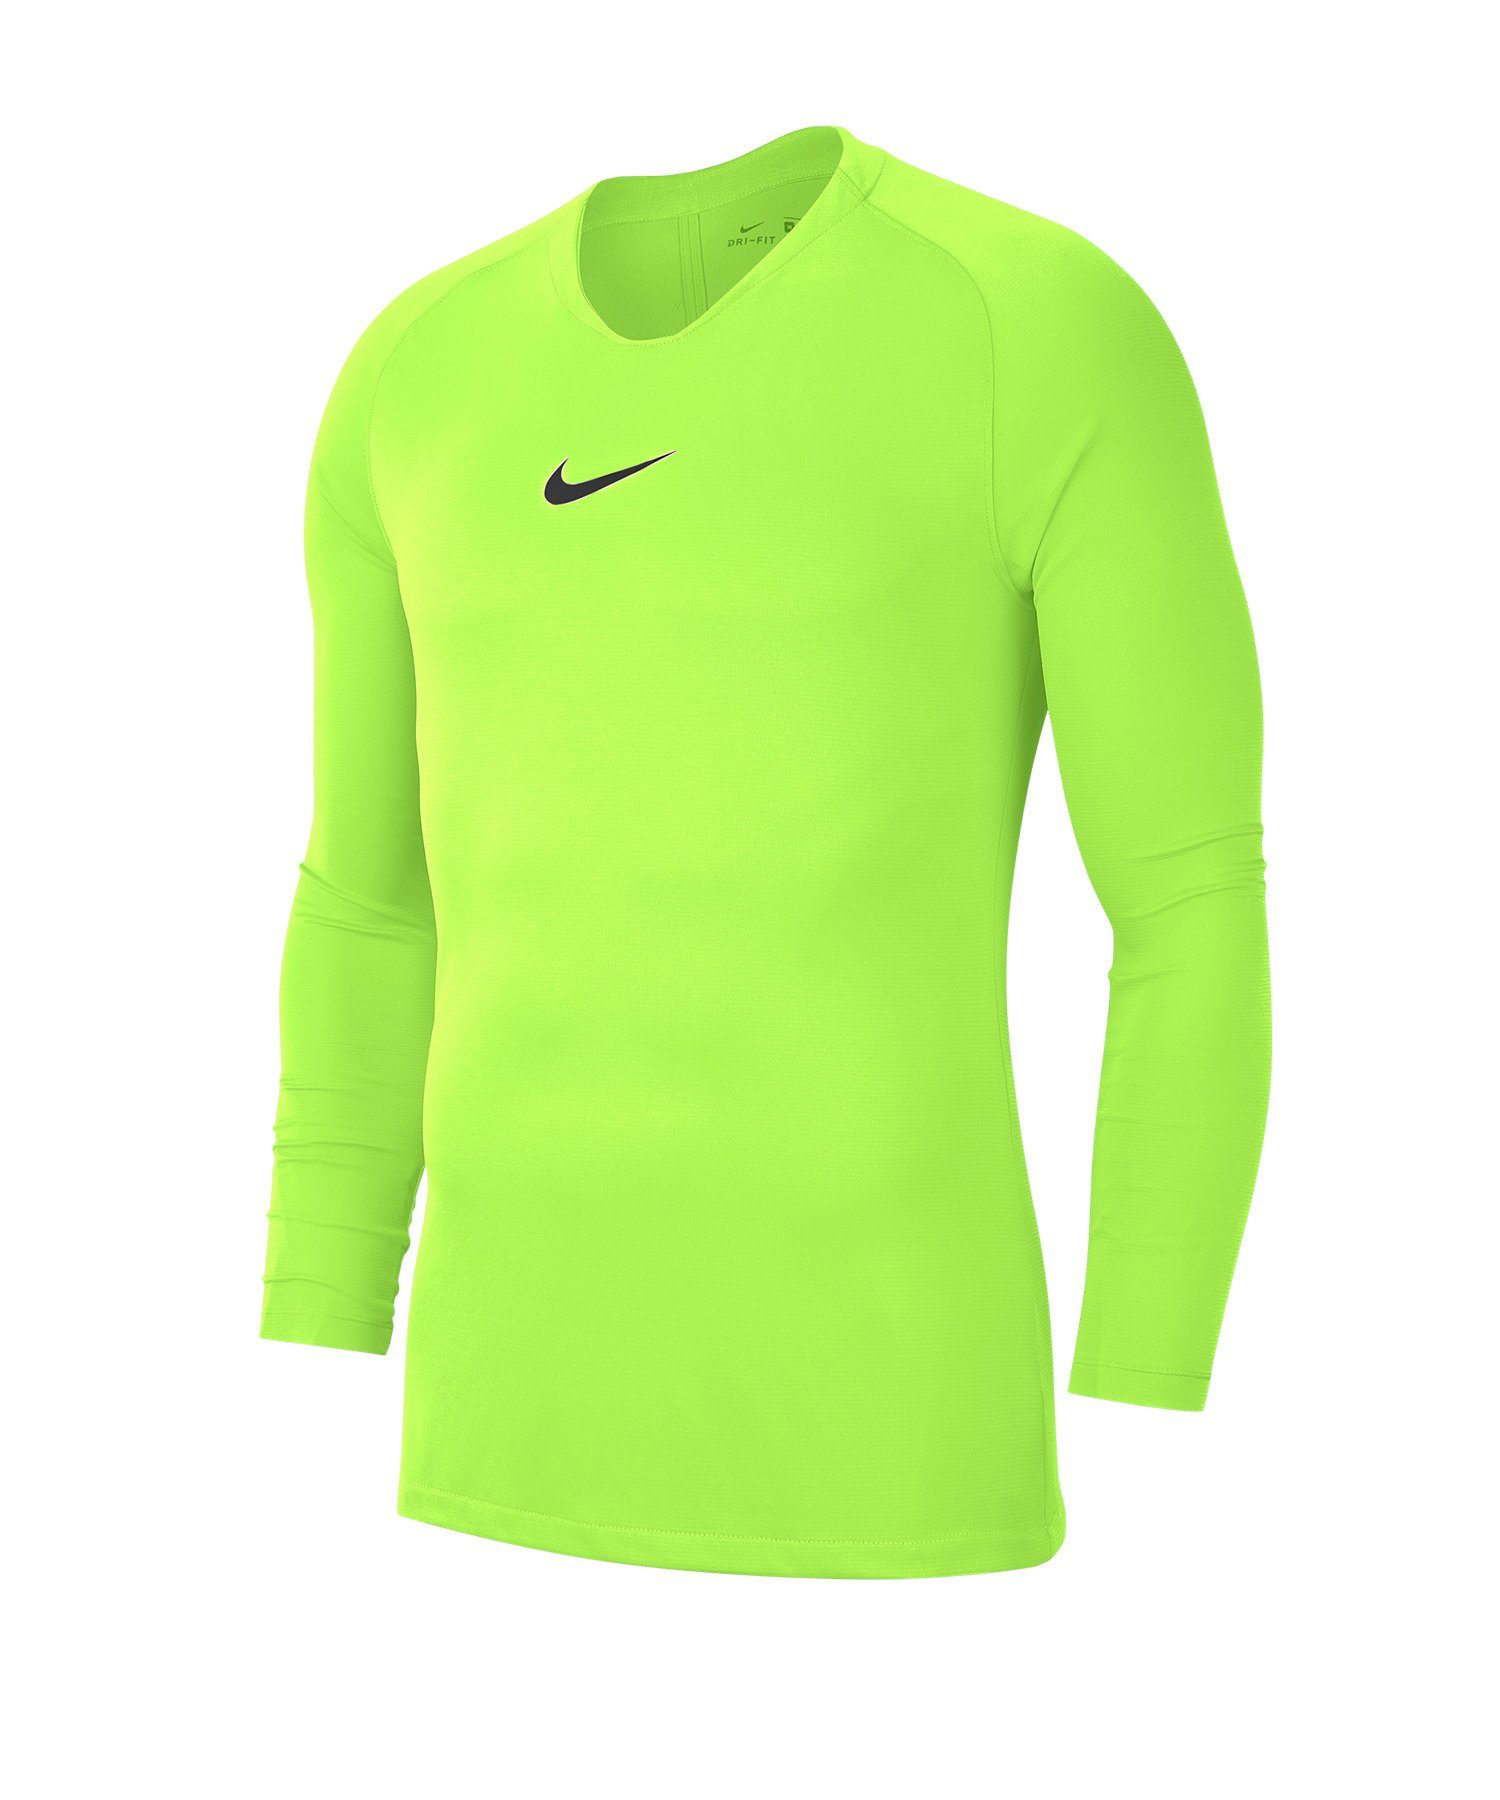 Daumenöffnung Top Funktionsshirt gelbschwarz Layer Nike Park Kids First